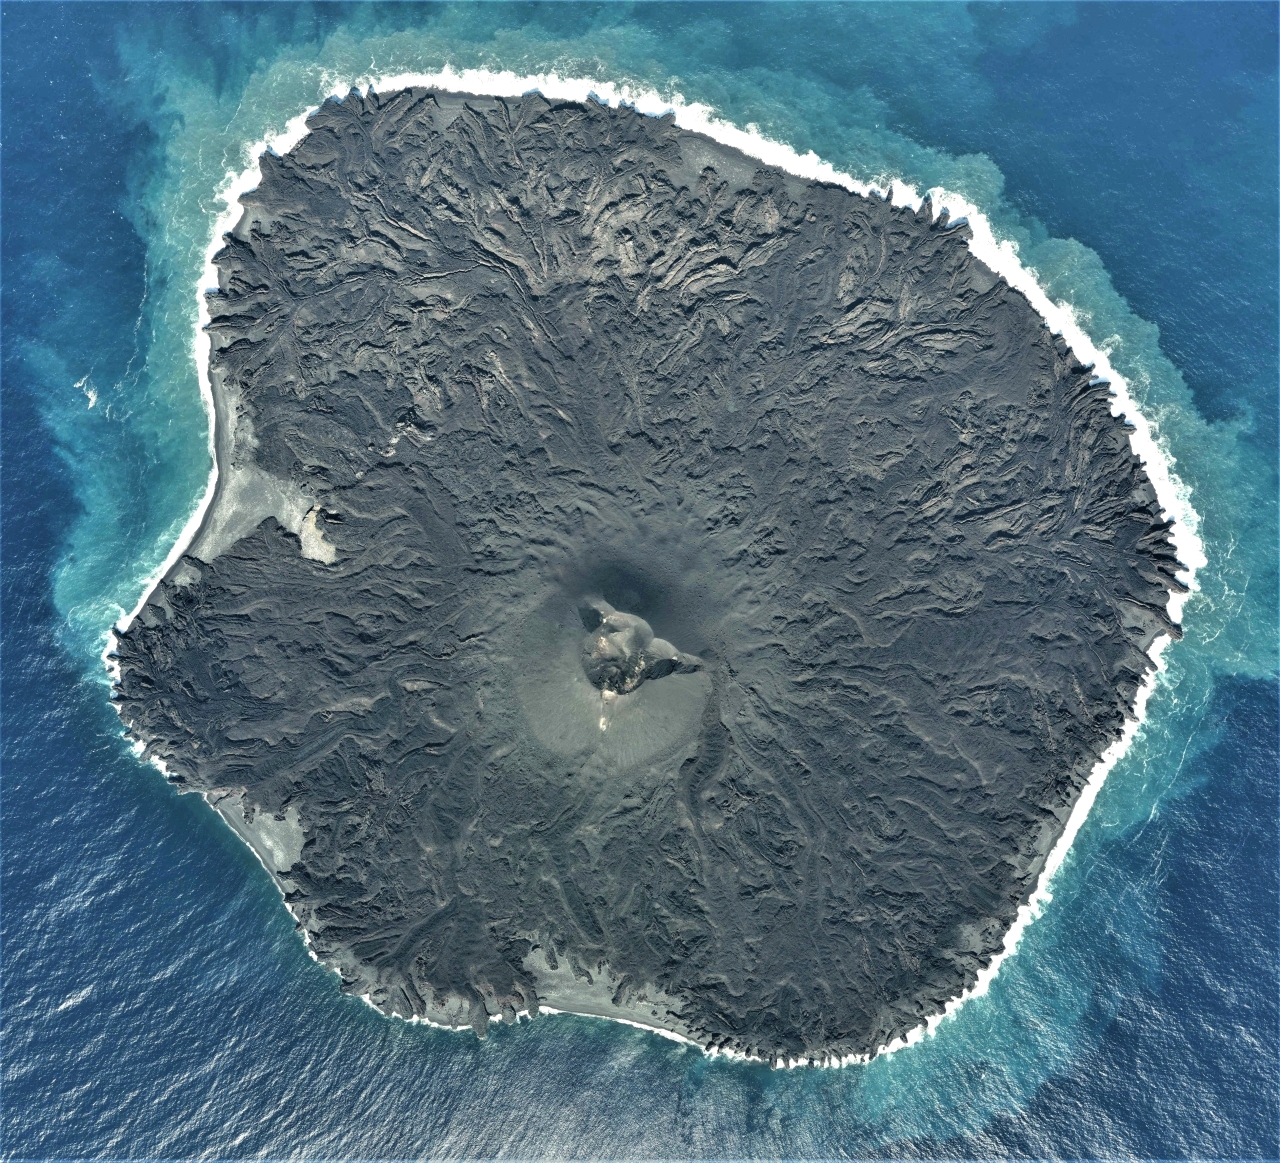 الصورة : 2013 ظهور جزيرة نيشينو الواقعة في المحيط الهادئ والتابعة لليابان بعد ثوران أحد البراكين في المحيط.